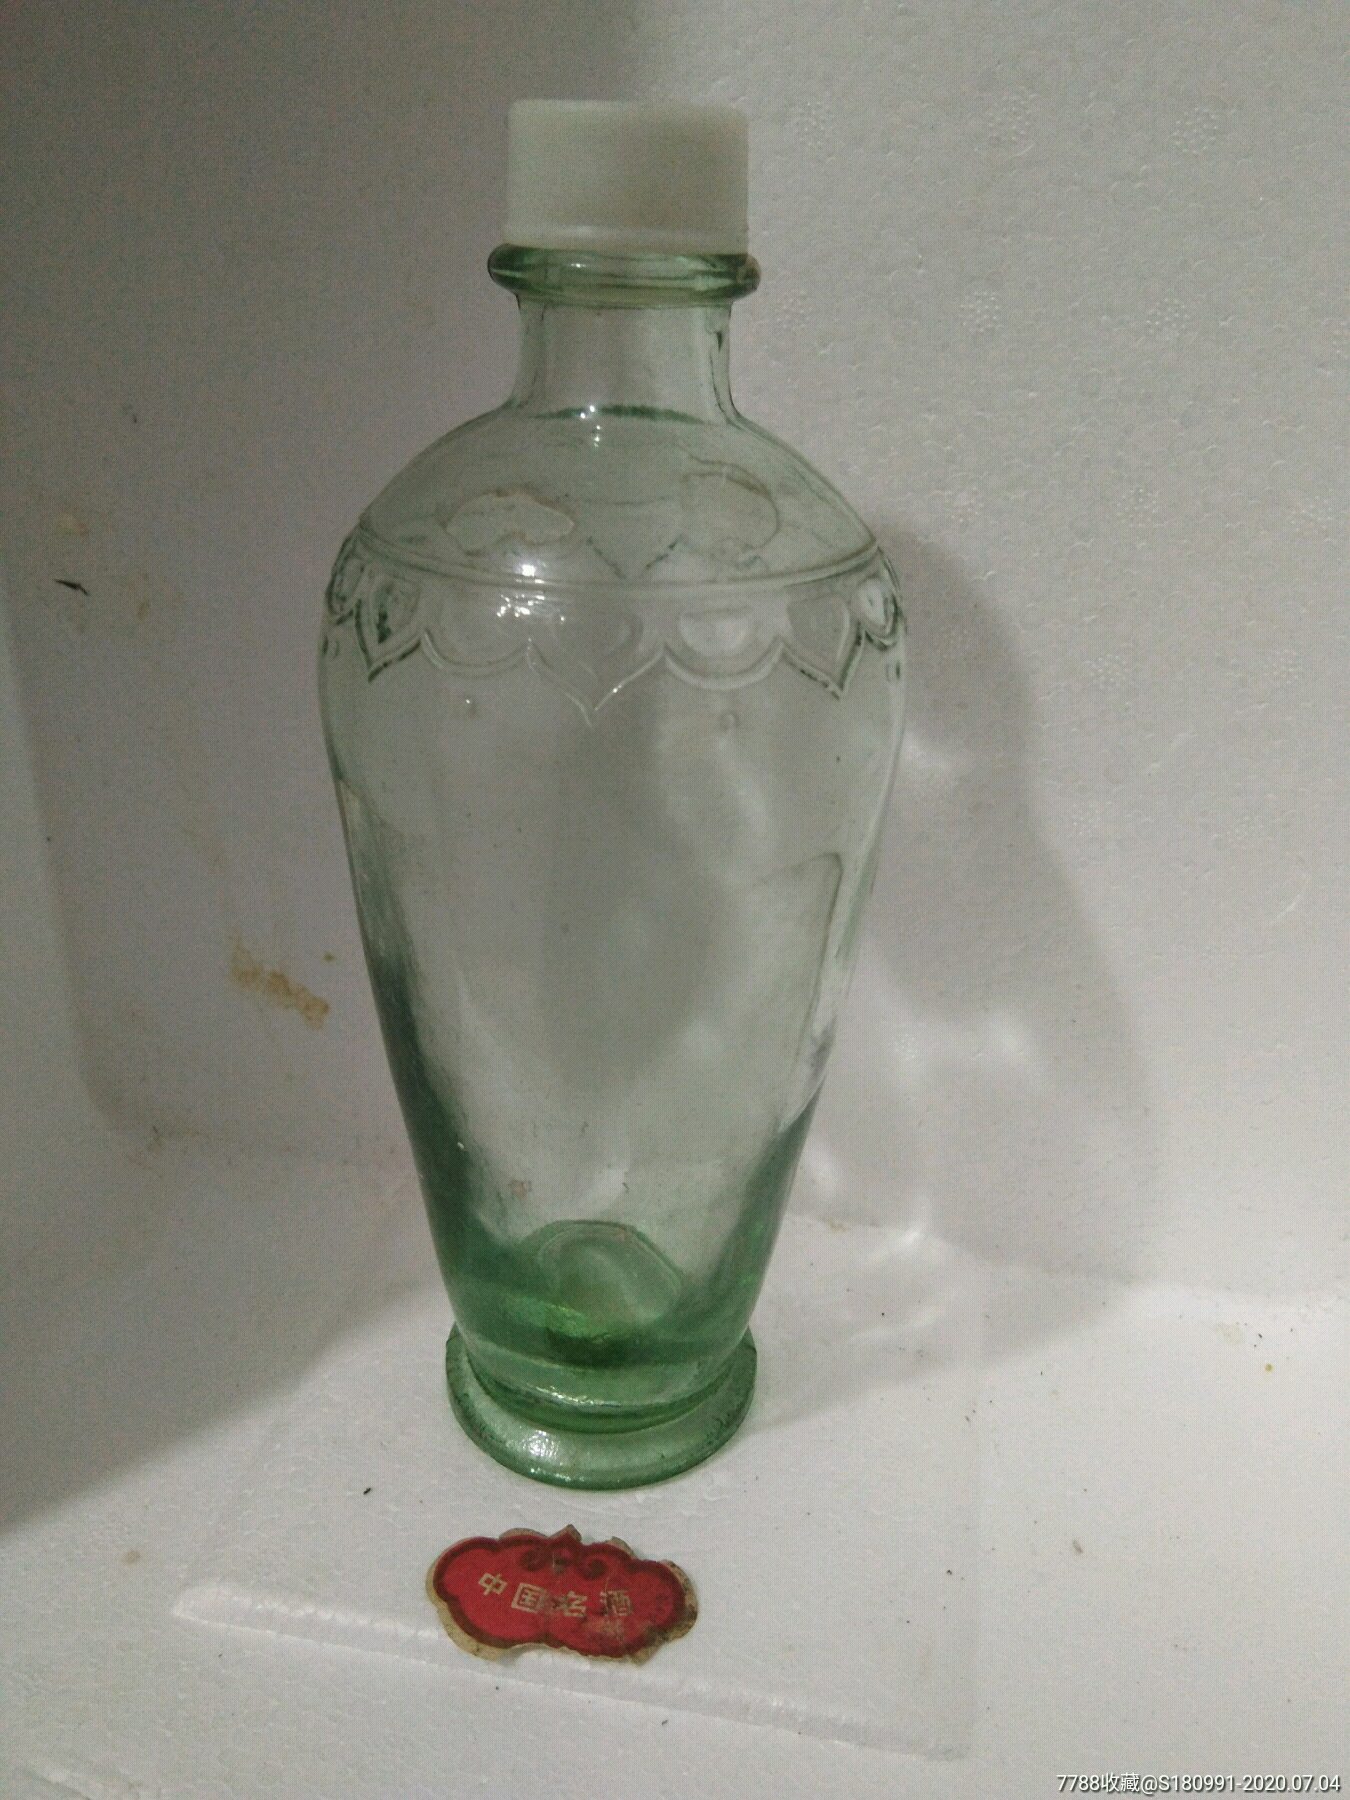 五粮液酒瓶,酒瓶,八十年代(20世纪),白酒瓶,玻璃,中国大陆_第1张